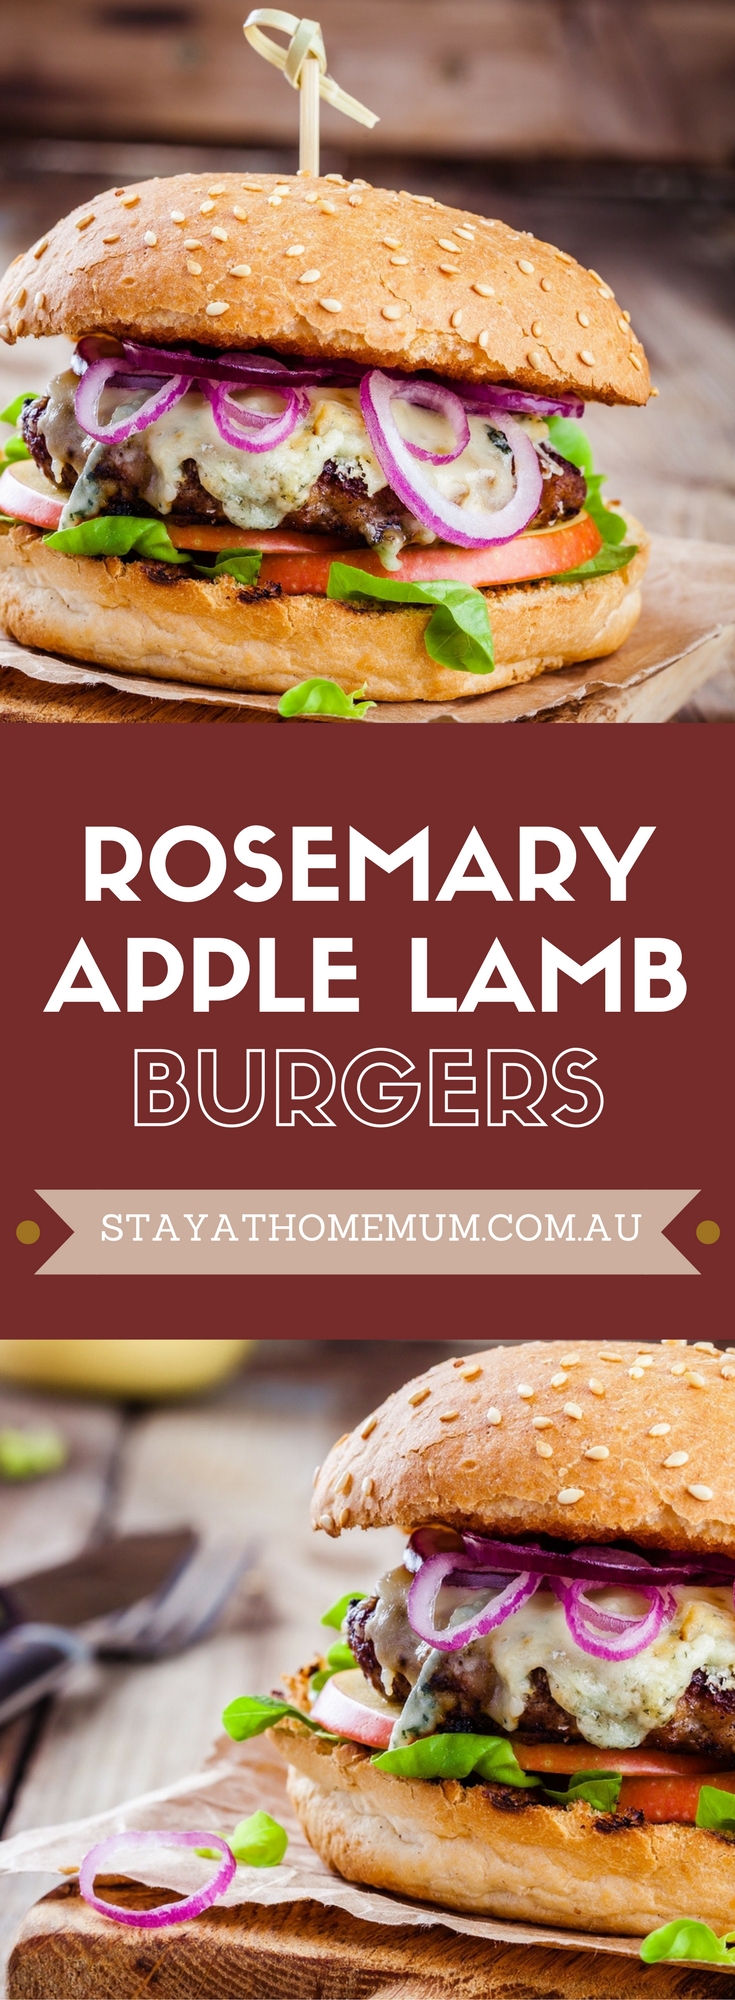 Rosemary Apple Lamb Burgers | Stay At Home Mum